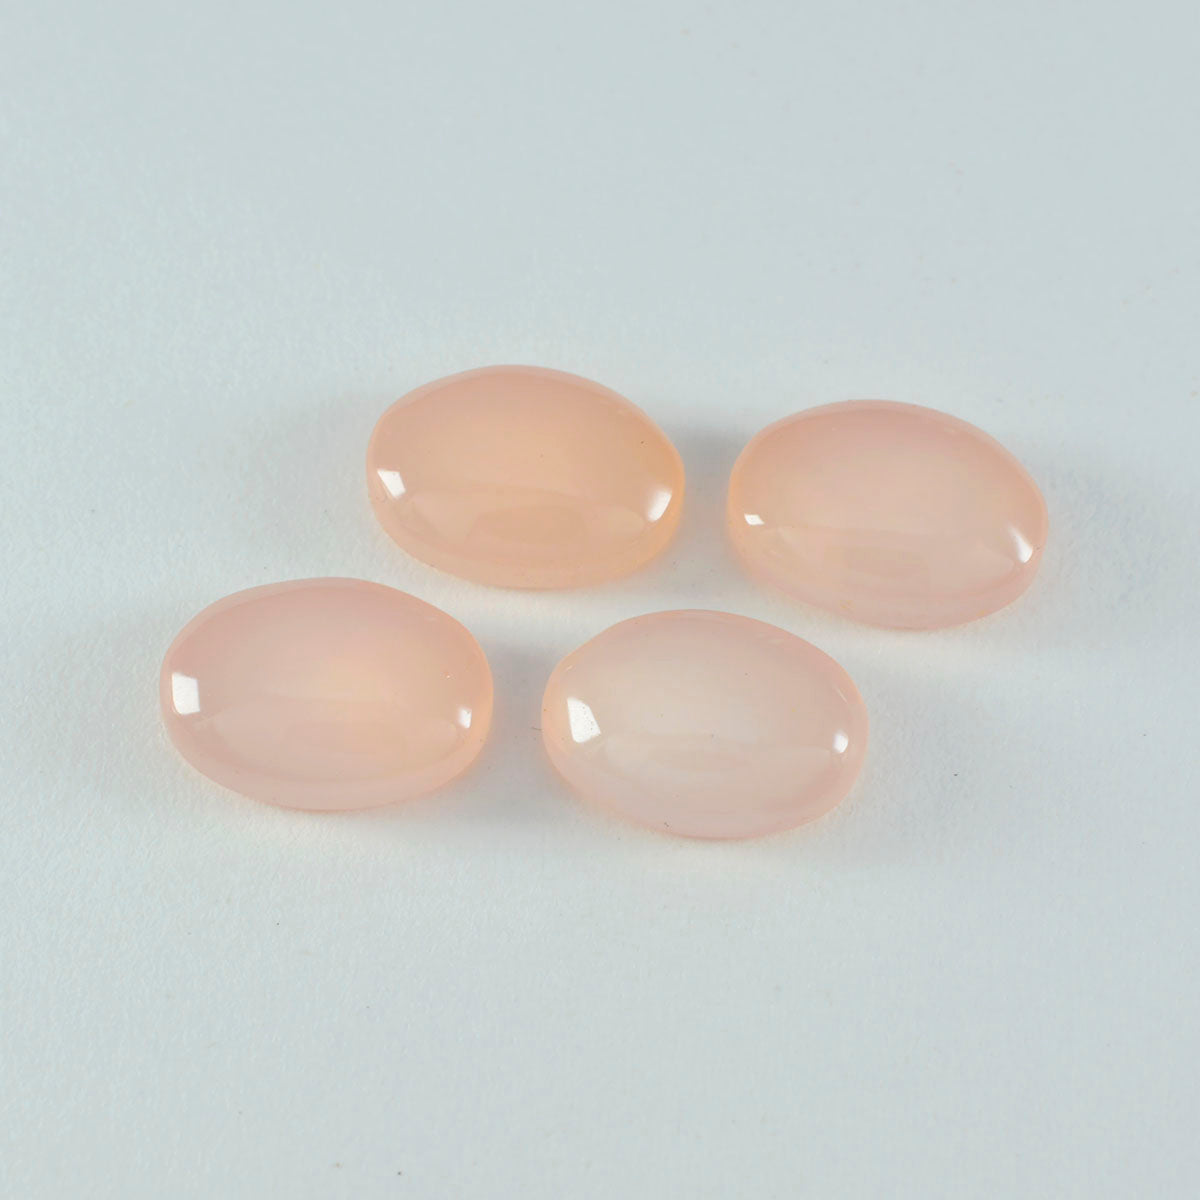 riyogems 1 pieza cabujón de cuarzo rosa rosa 9x11 mm forma ovalada piedra preciosa suelta de fantástica calidad